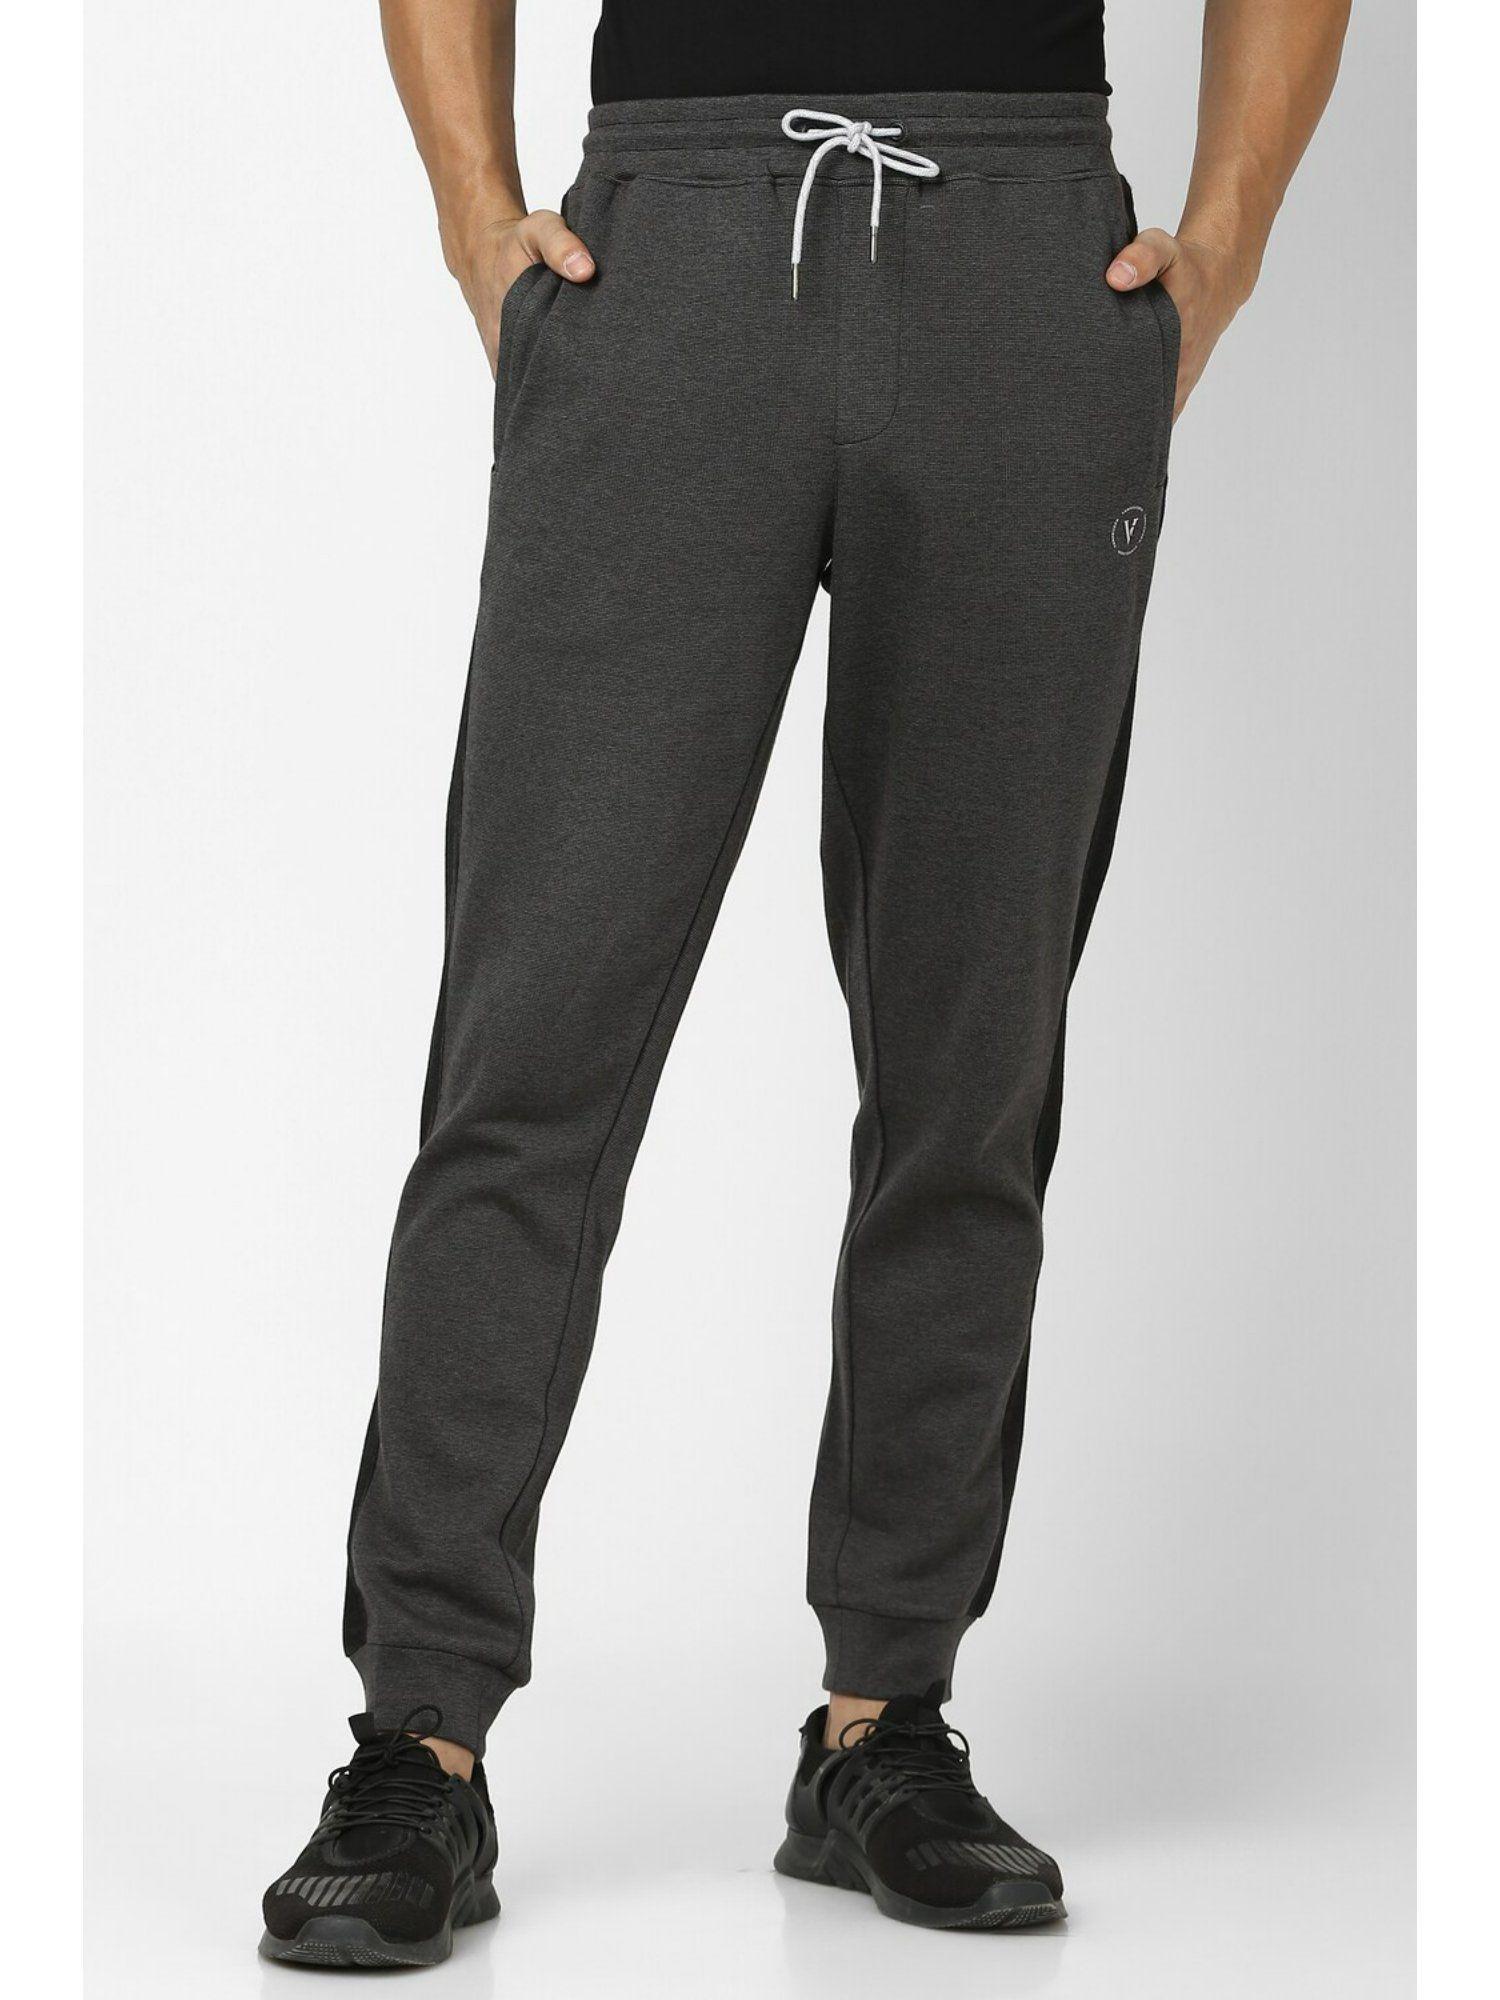 men-grey-stripes-casual-jogger-pants